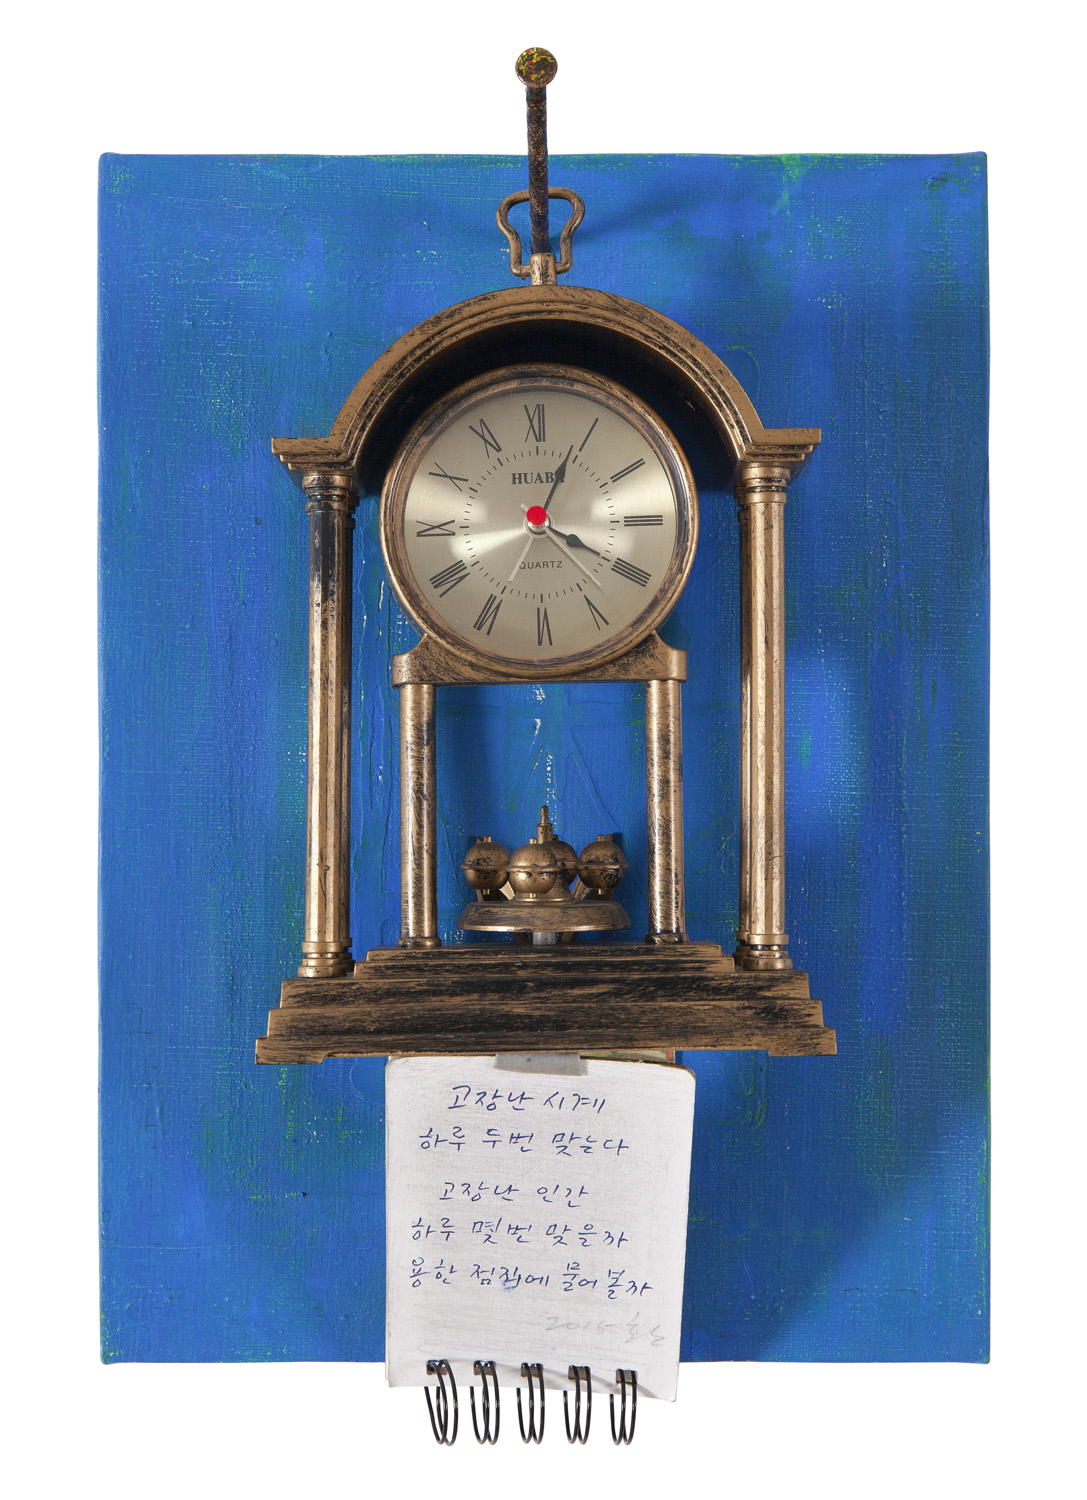 夢中夢說 0-1, 2015, A broken clock and notebook on canvas, 35x24x13.5cm